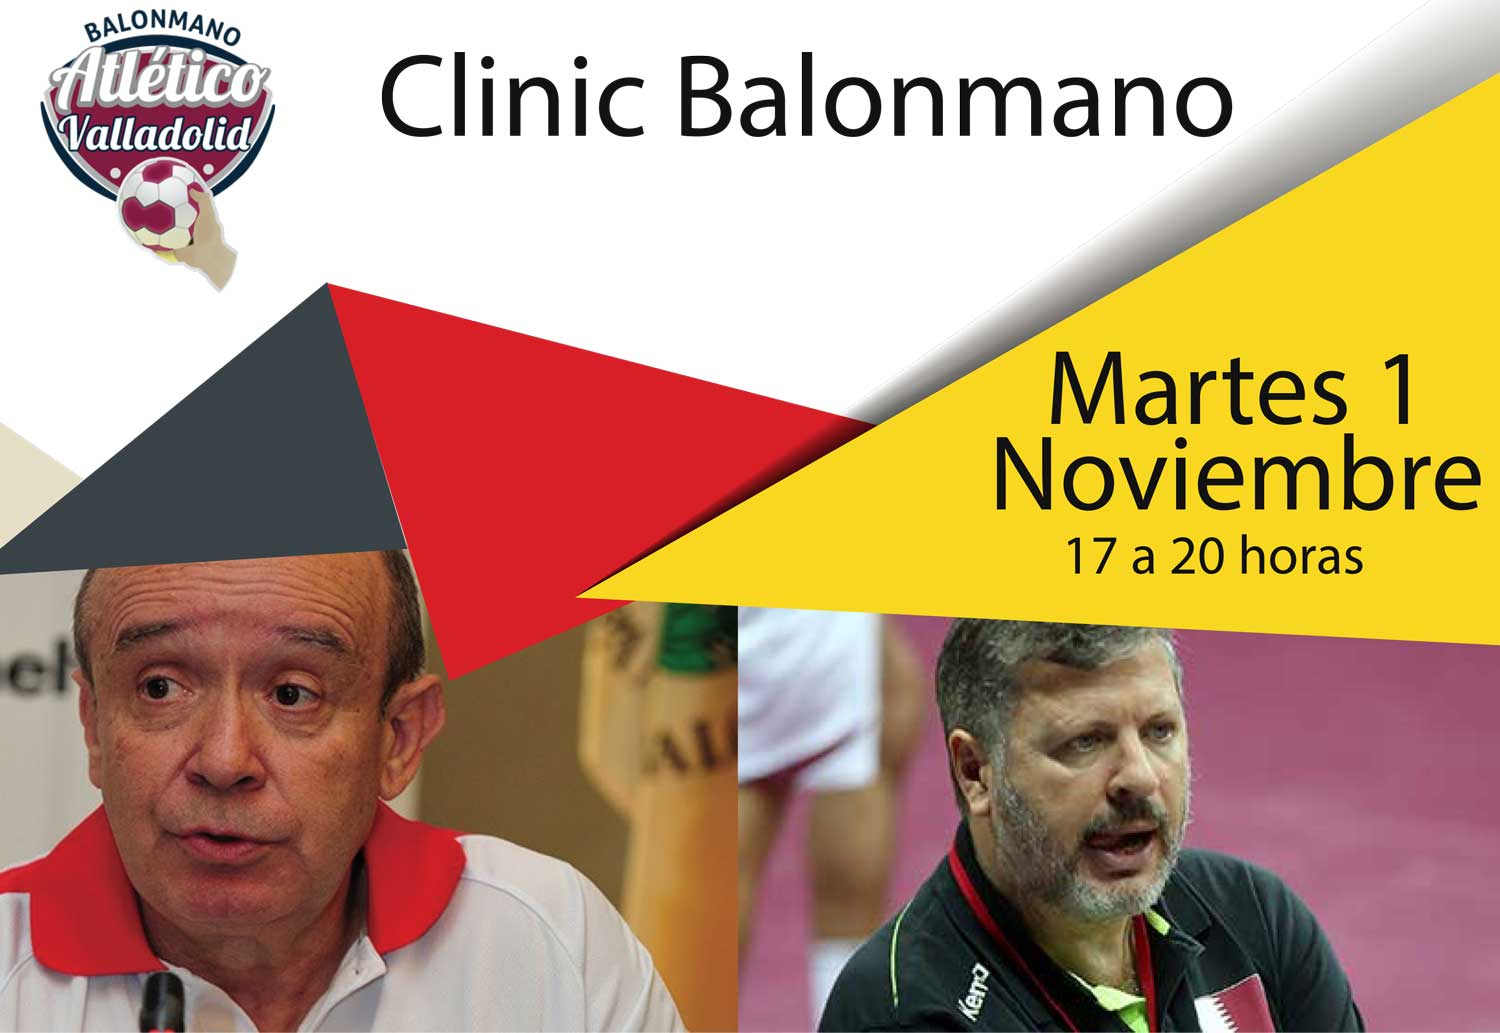 El I Clinic de Balonmano del Recoletas Atlético Valladolid se celebra mañana con la presencia de Manolo Laguna y Julián Ruiz